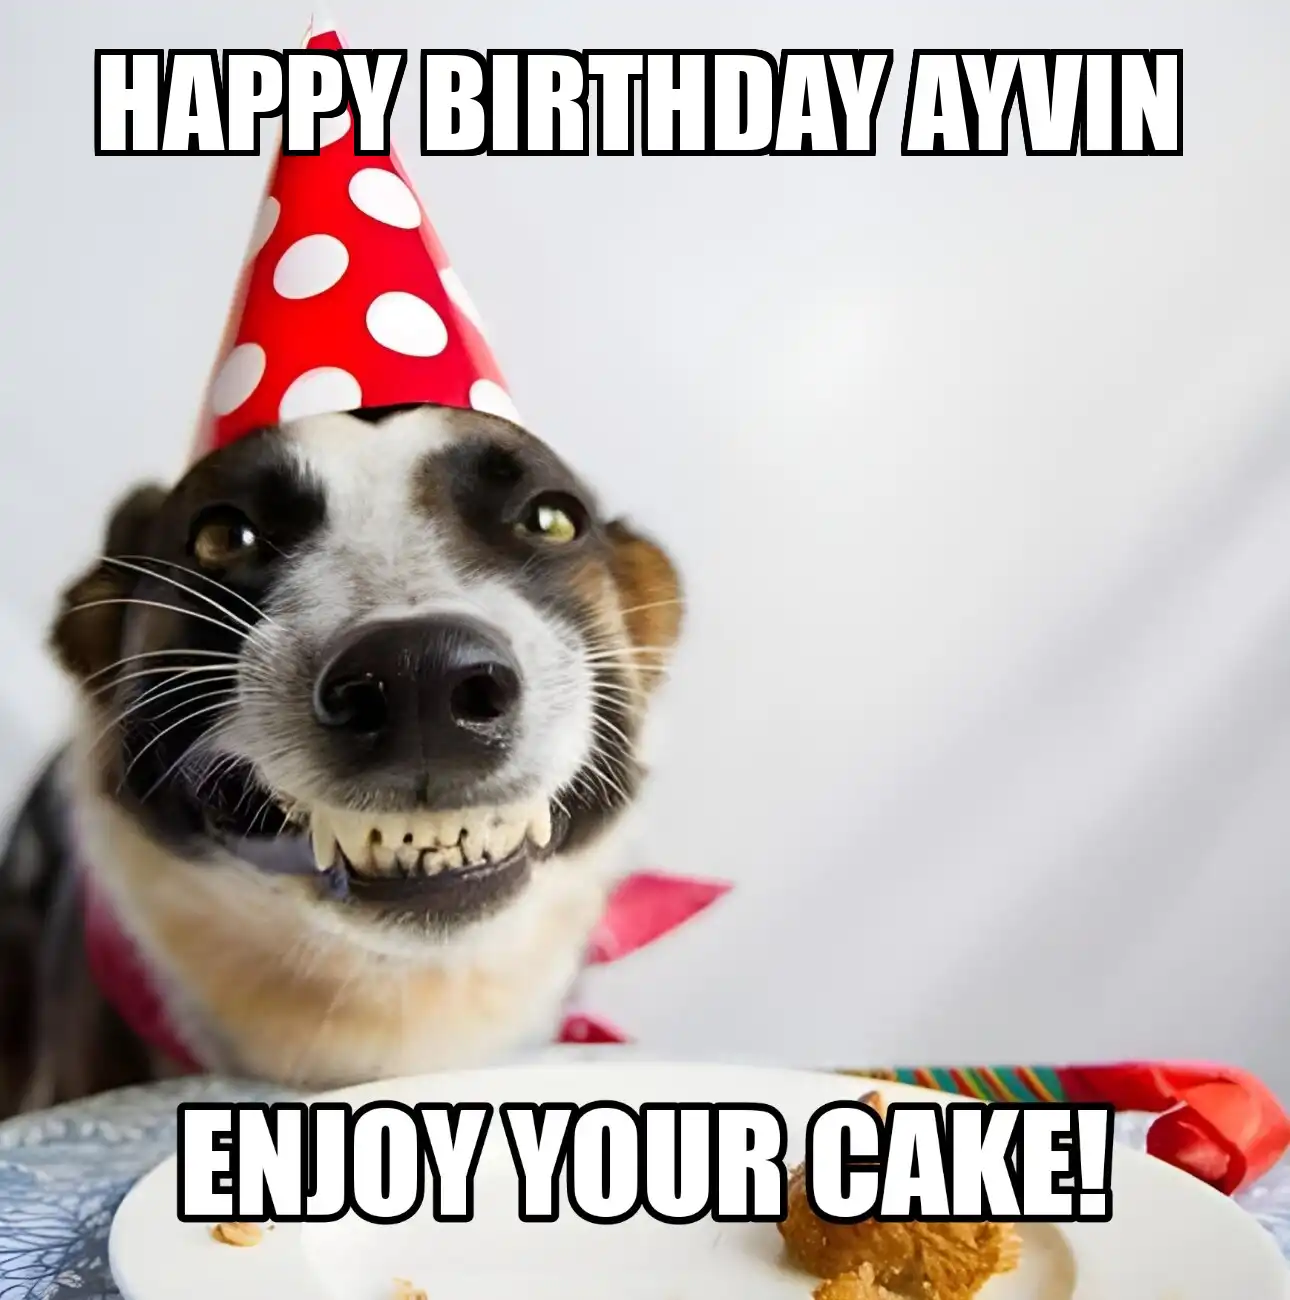 Happy Birthday Ayvin Enjoy Your Cake Dog Meme